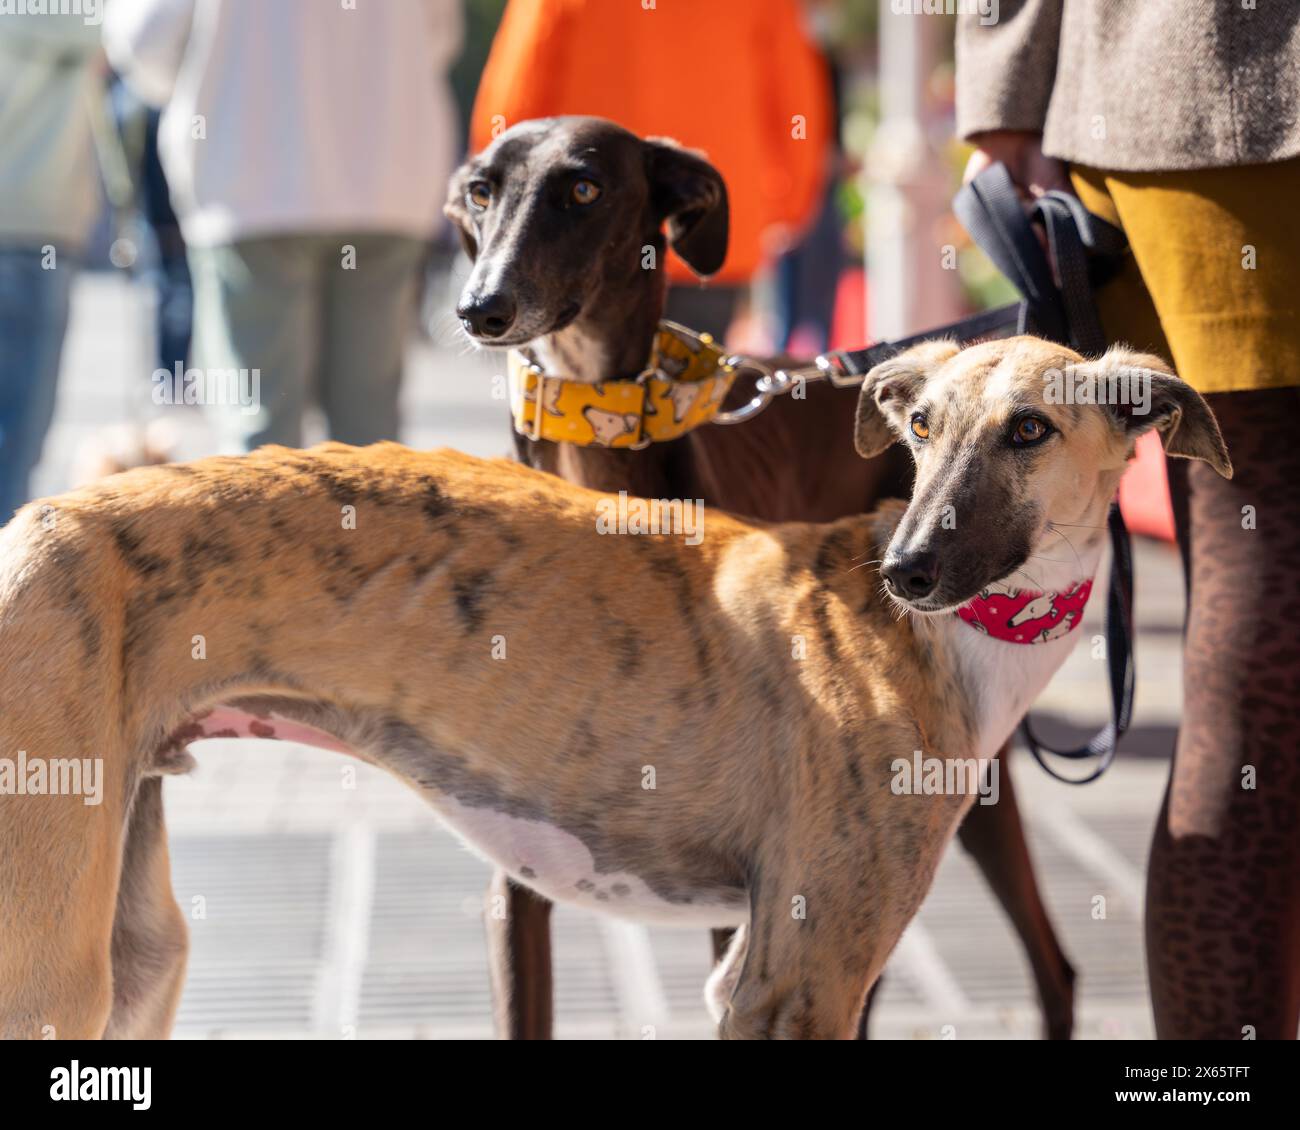 Le Galgo Español, ou lévrier espagnol, est une ancienne race de chien, un membre de la famille des sighthound. Deux lévriers espagnols en laisse dans la ville c Banque D'Images